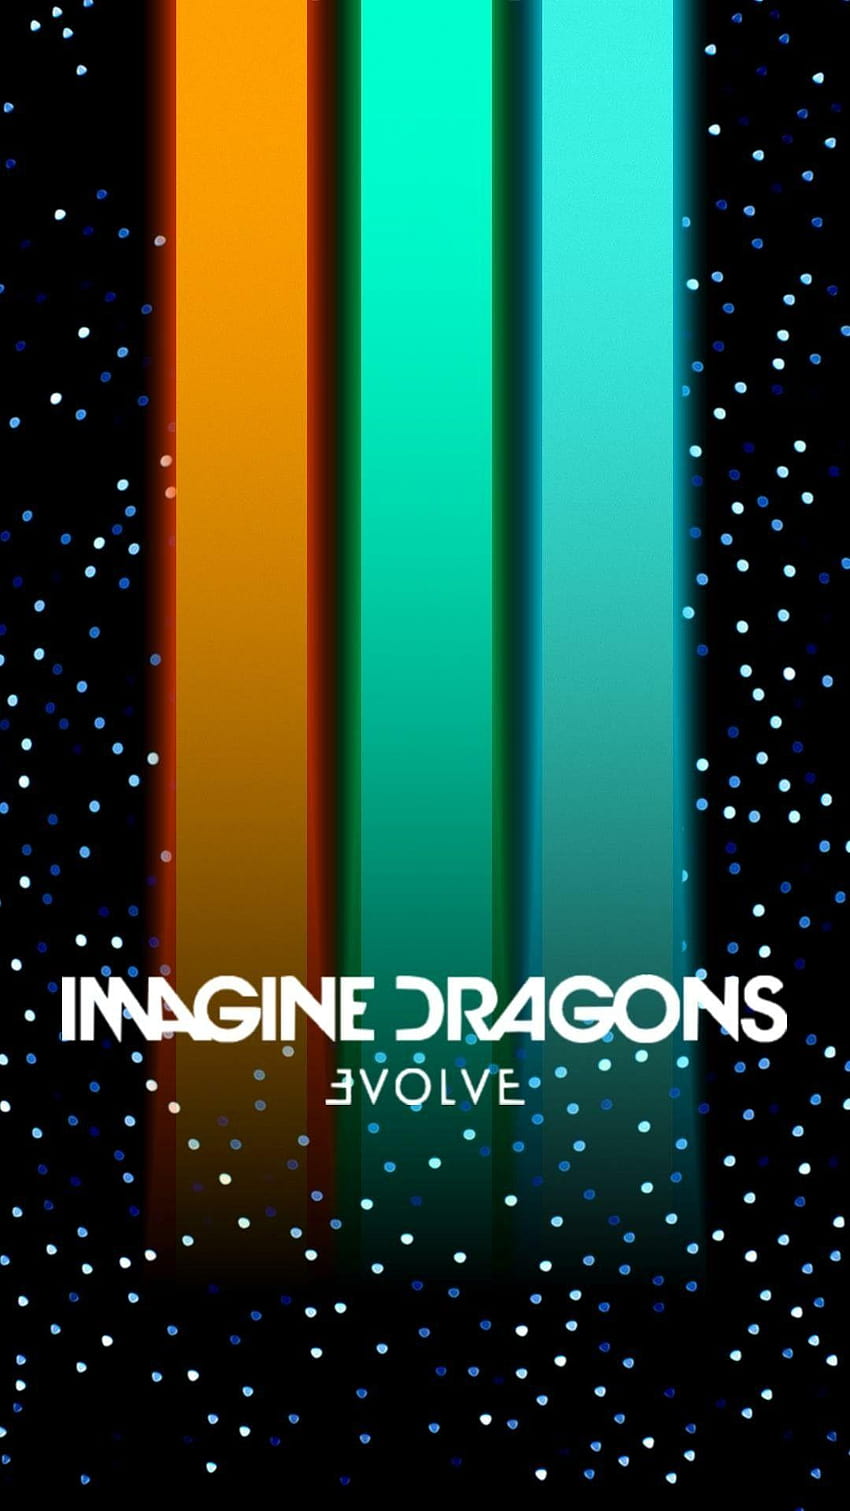 EvolvE、ドラゴンの起源を想像する HD電話の壁紙